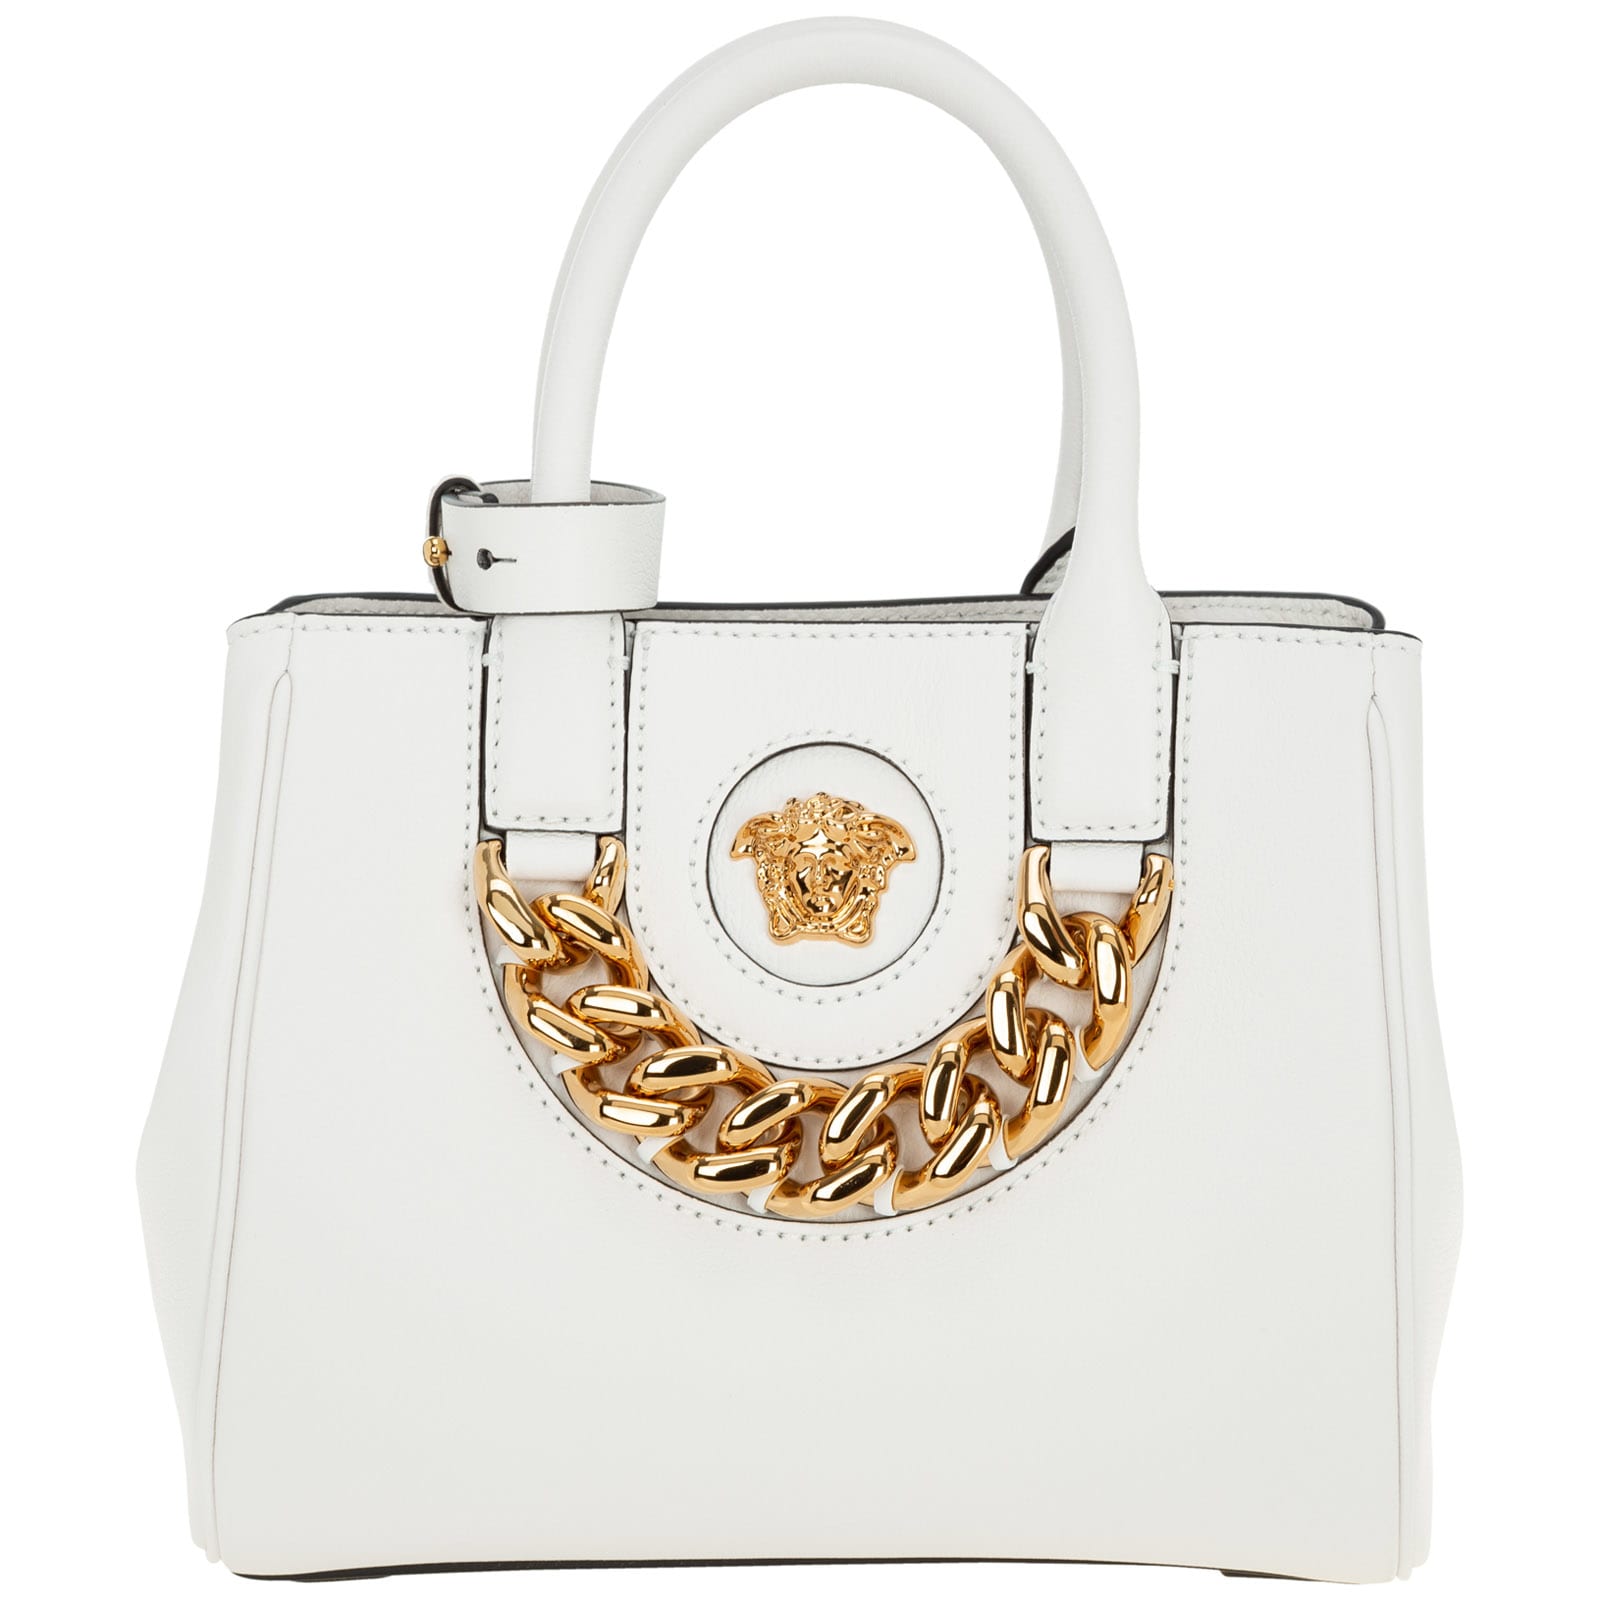 Versace La Medusa Handbags